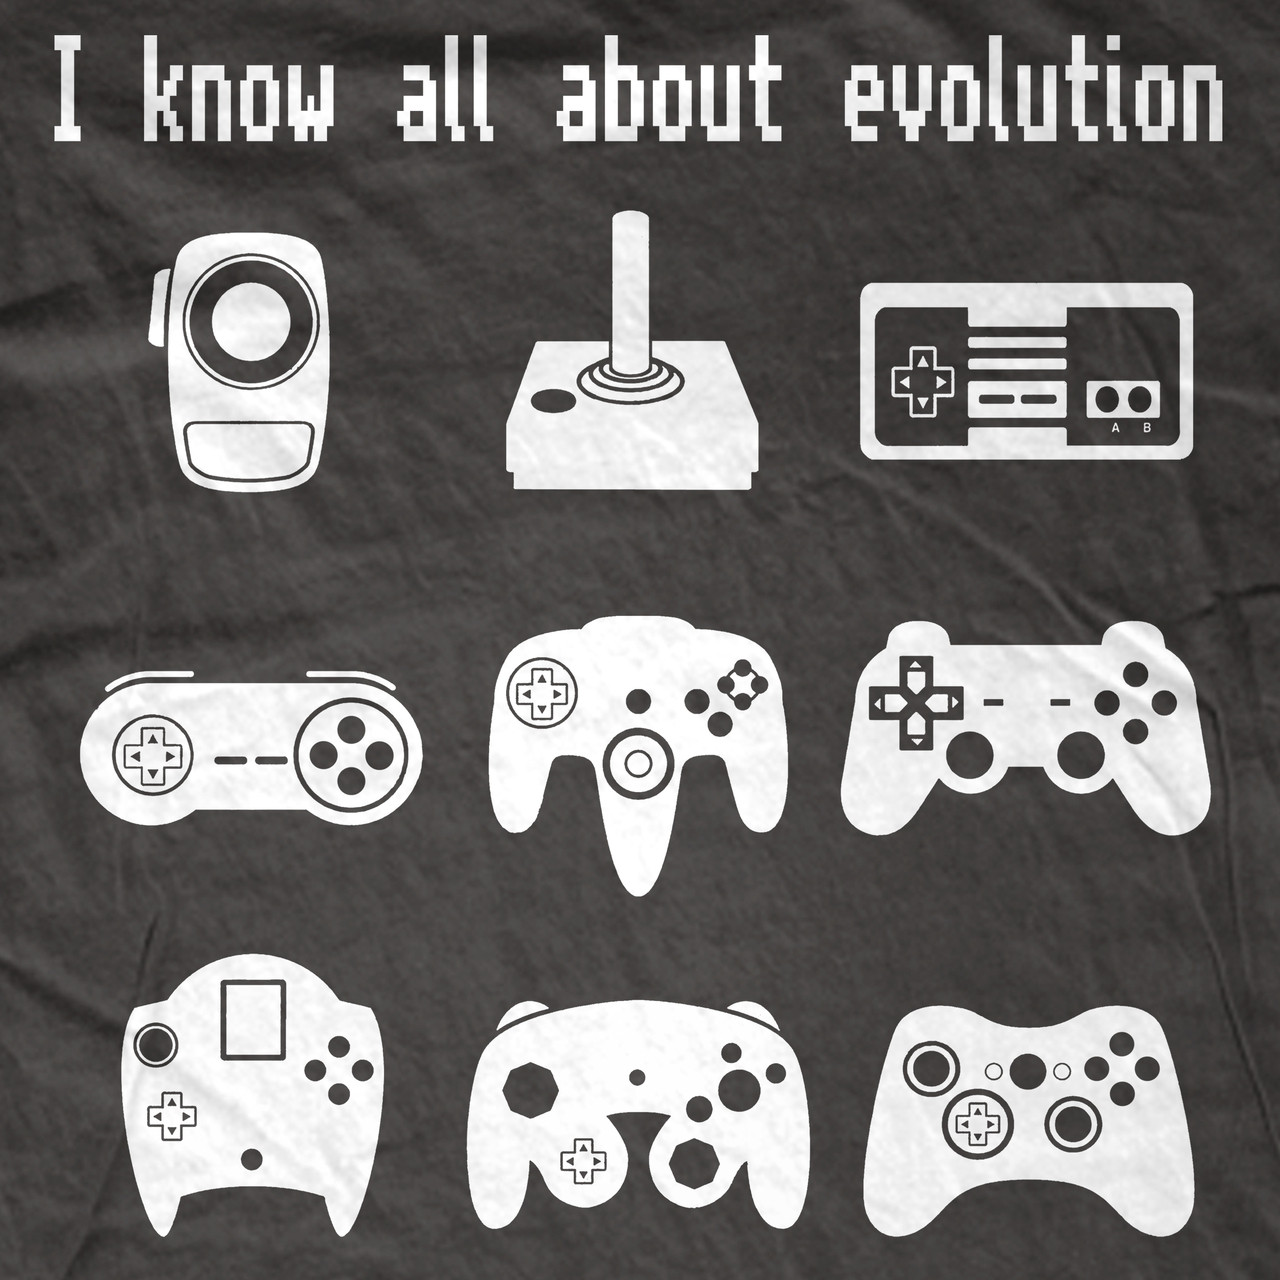 Evolução games